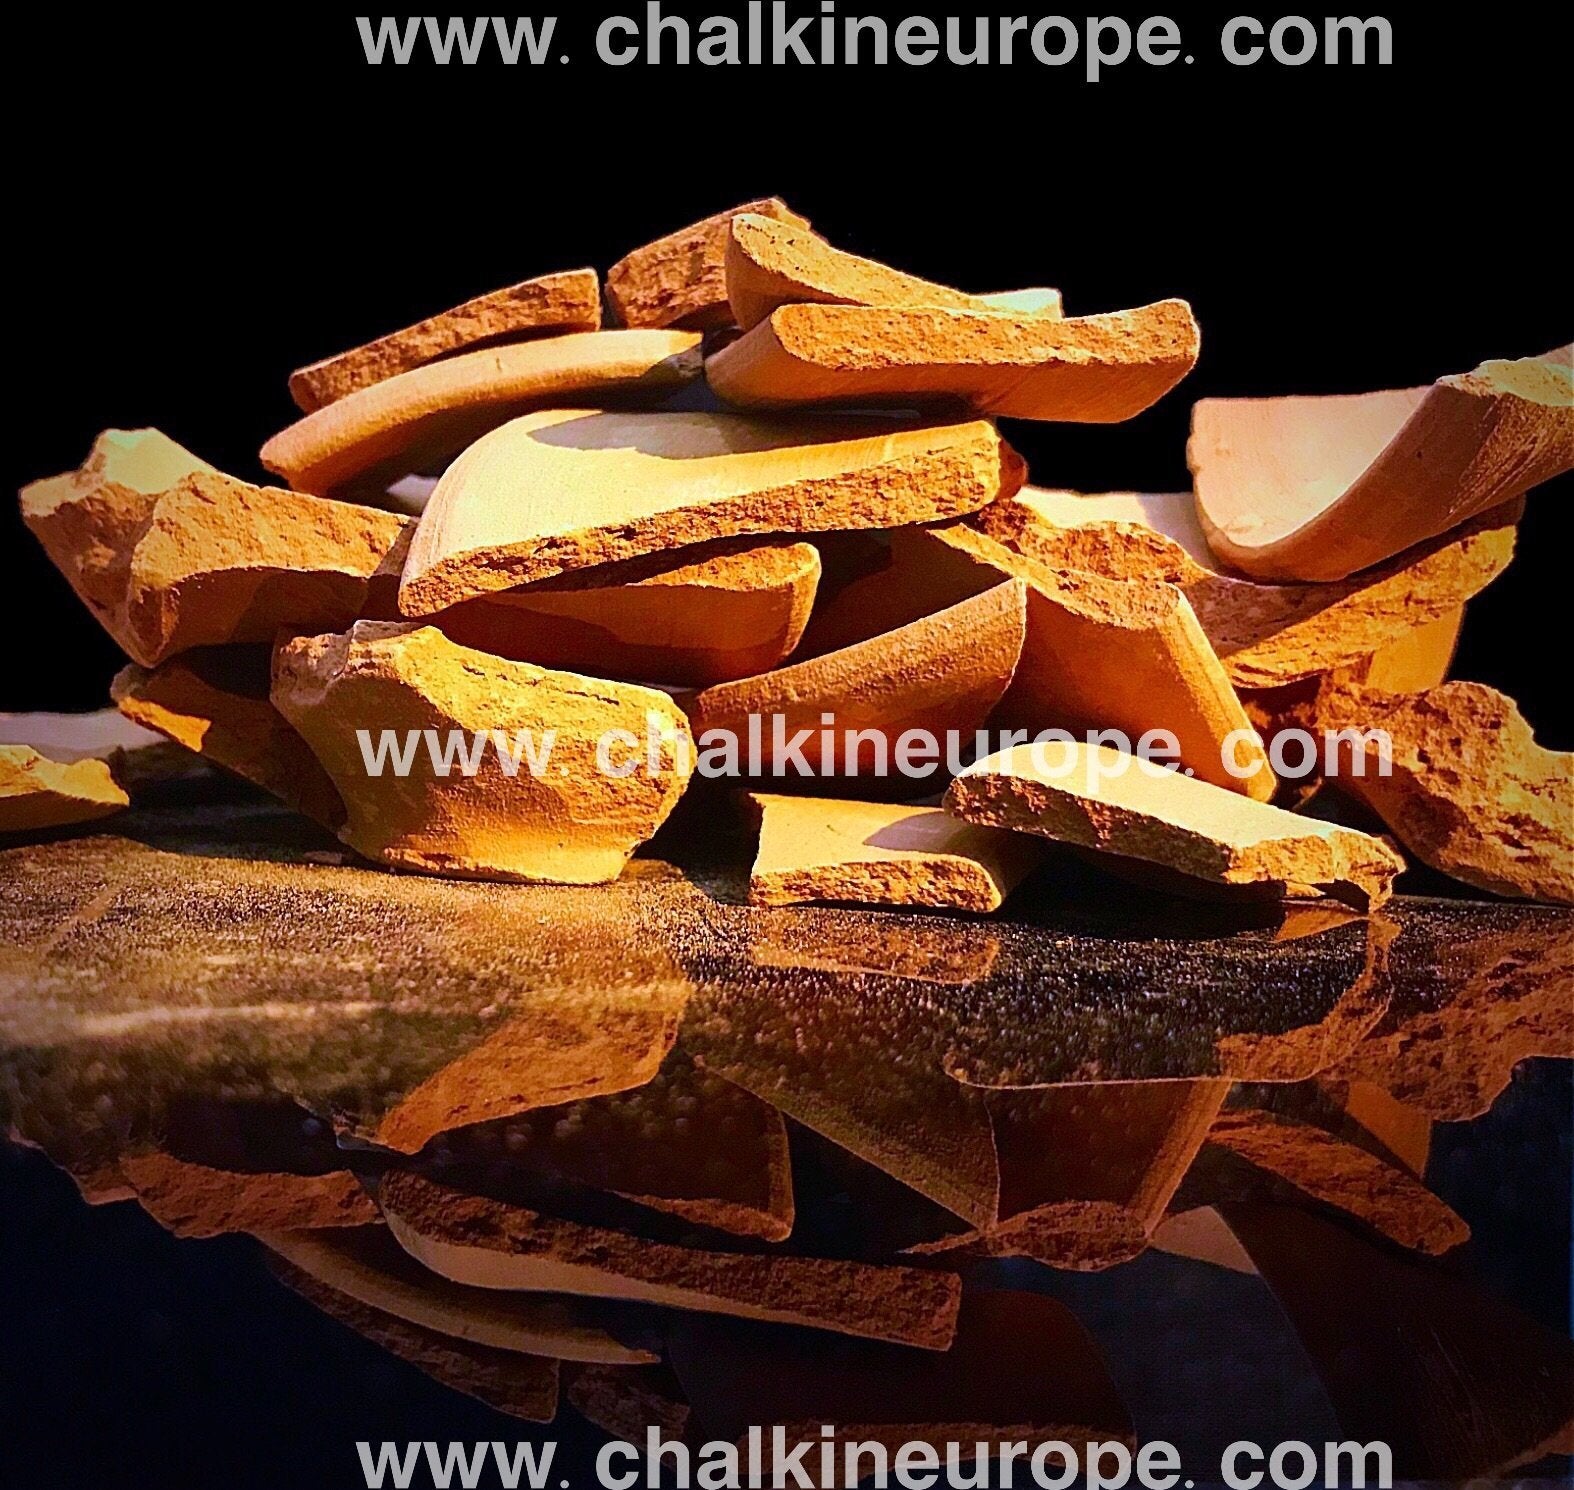 Chips de olla de barro - Chalkineurope